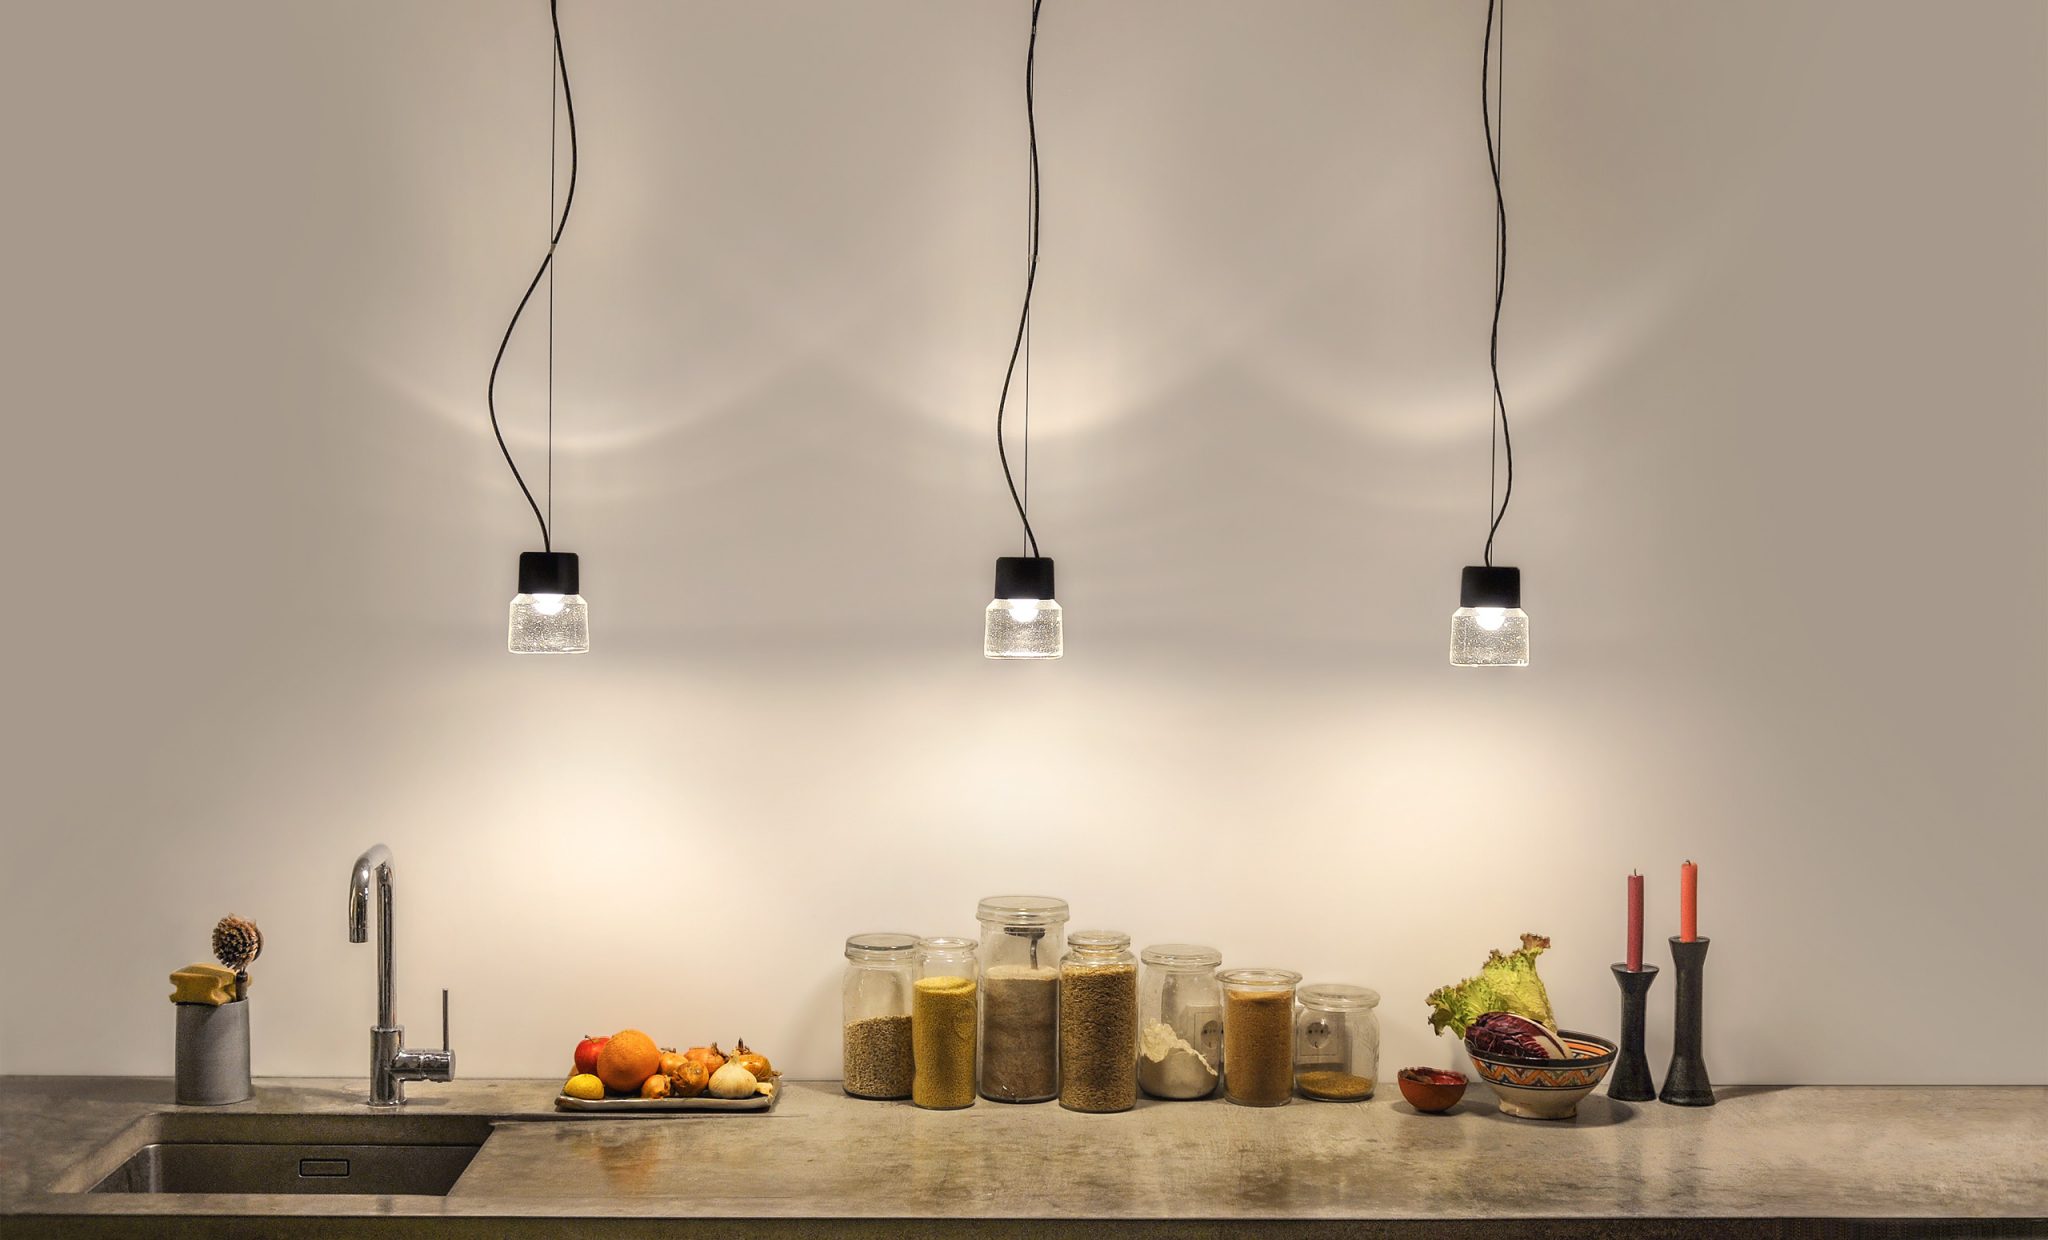 Cast LED Pendelleuchte aus gegossenem Glas und eloxiertem Aluminium in einer Gruppe über der Küchenarbeitsplatte.